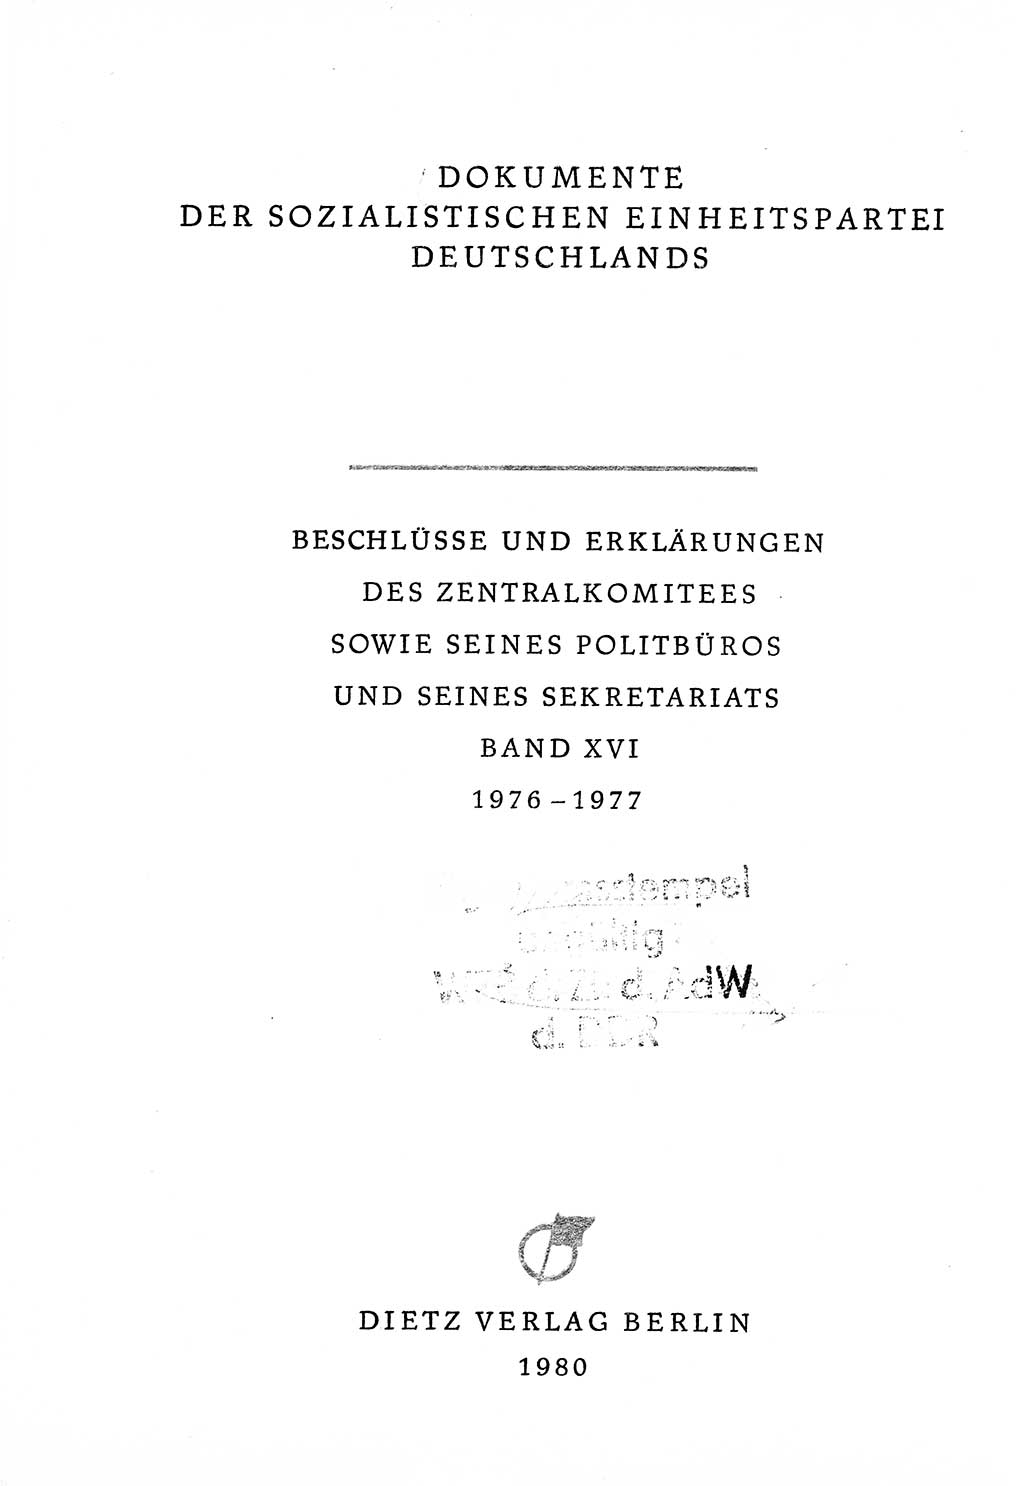 Dokumente der Sozialistischen Einheitspartei Deutschlands (SED) [Deutsche Demokratische Republik (DDR)] 1976-1977, Seite 3 (Dok. SED DDR 1976-1977, S. 3)